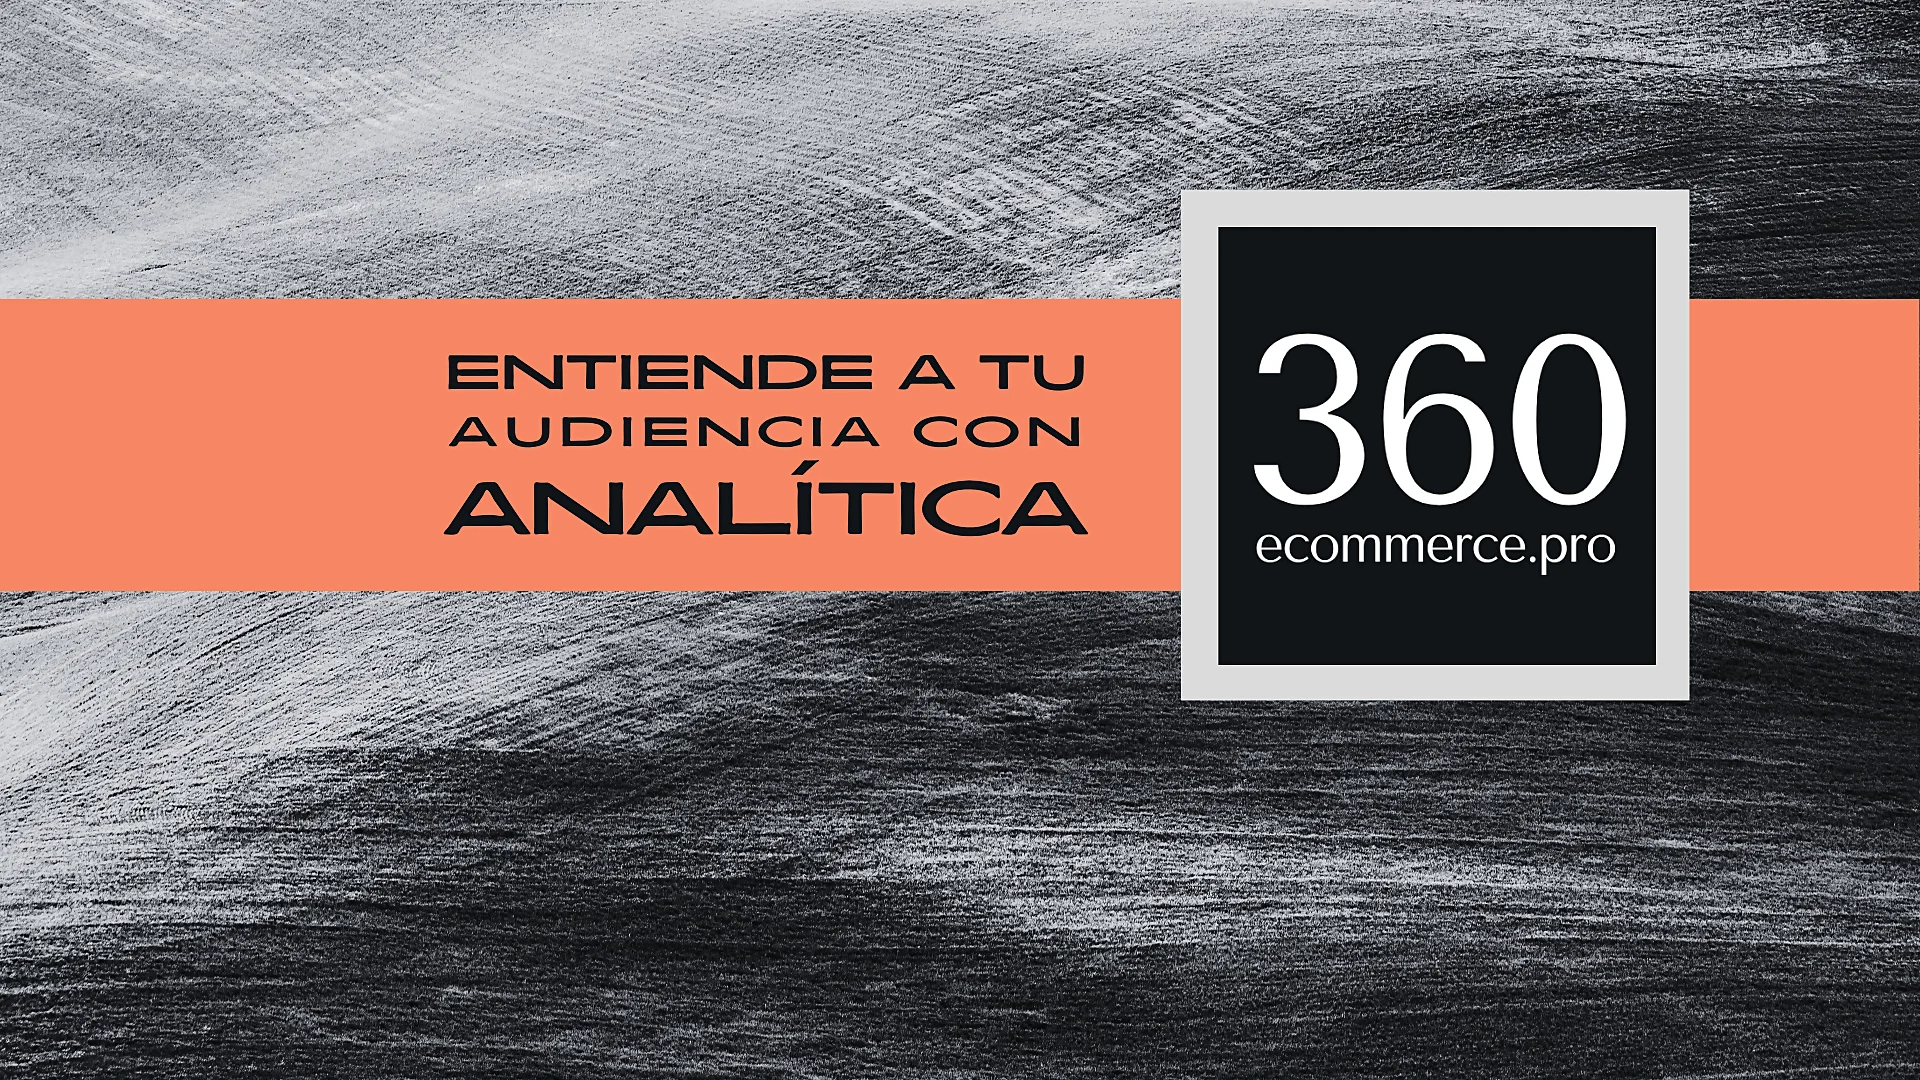 Gráfico de diseño minimalista con la inscripción 'ENTIENDE A TU AUDIENCIA CON ANALÍTICA' sobre una banda naranja y el logo '360 ecommerce.pro', representando estrategias de SEO para galerías de Arte.